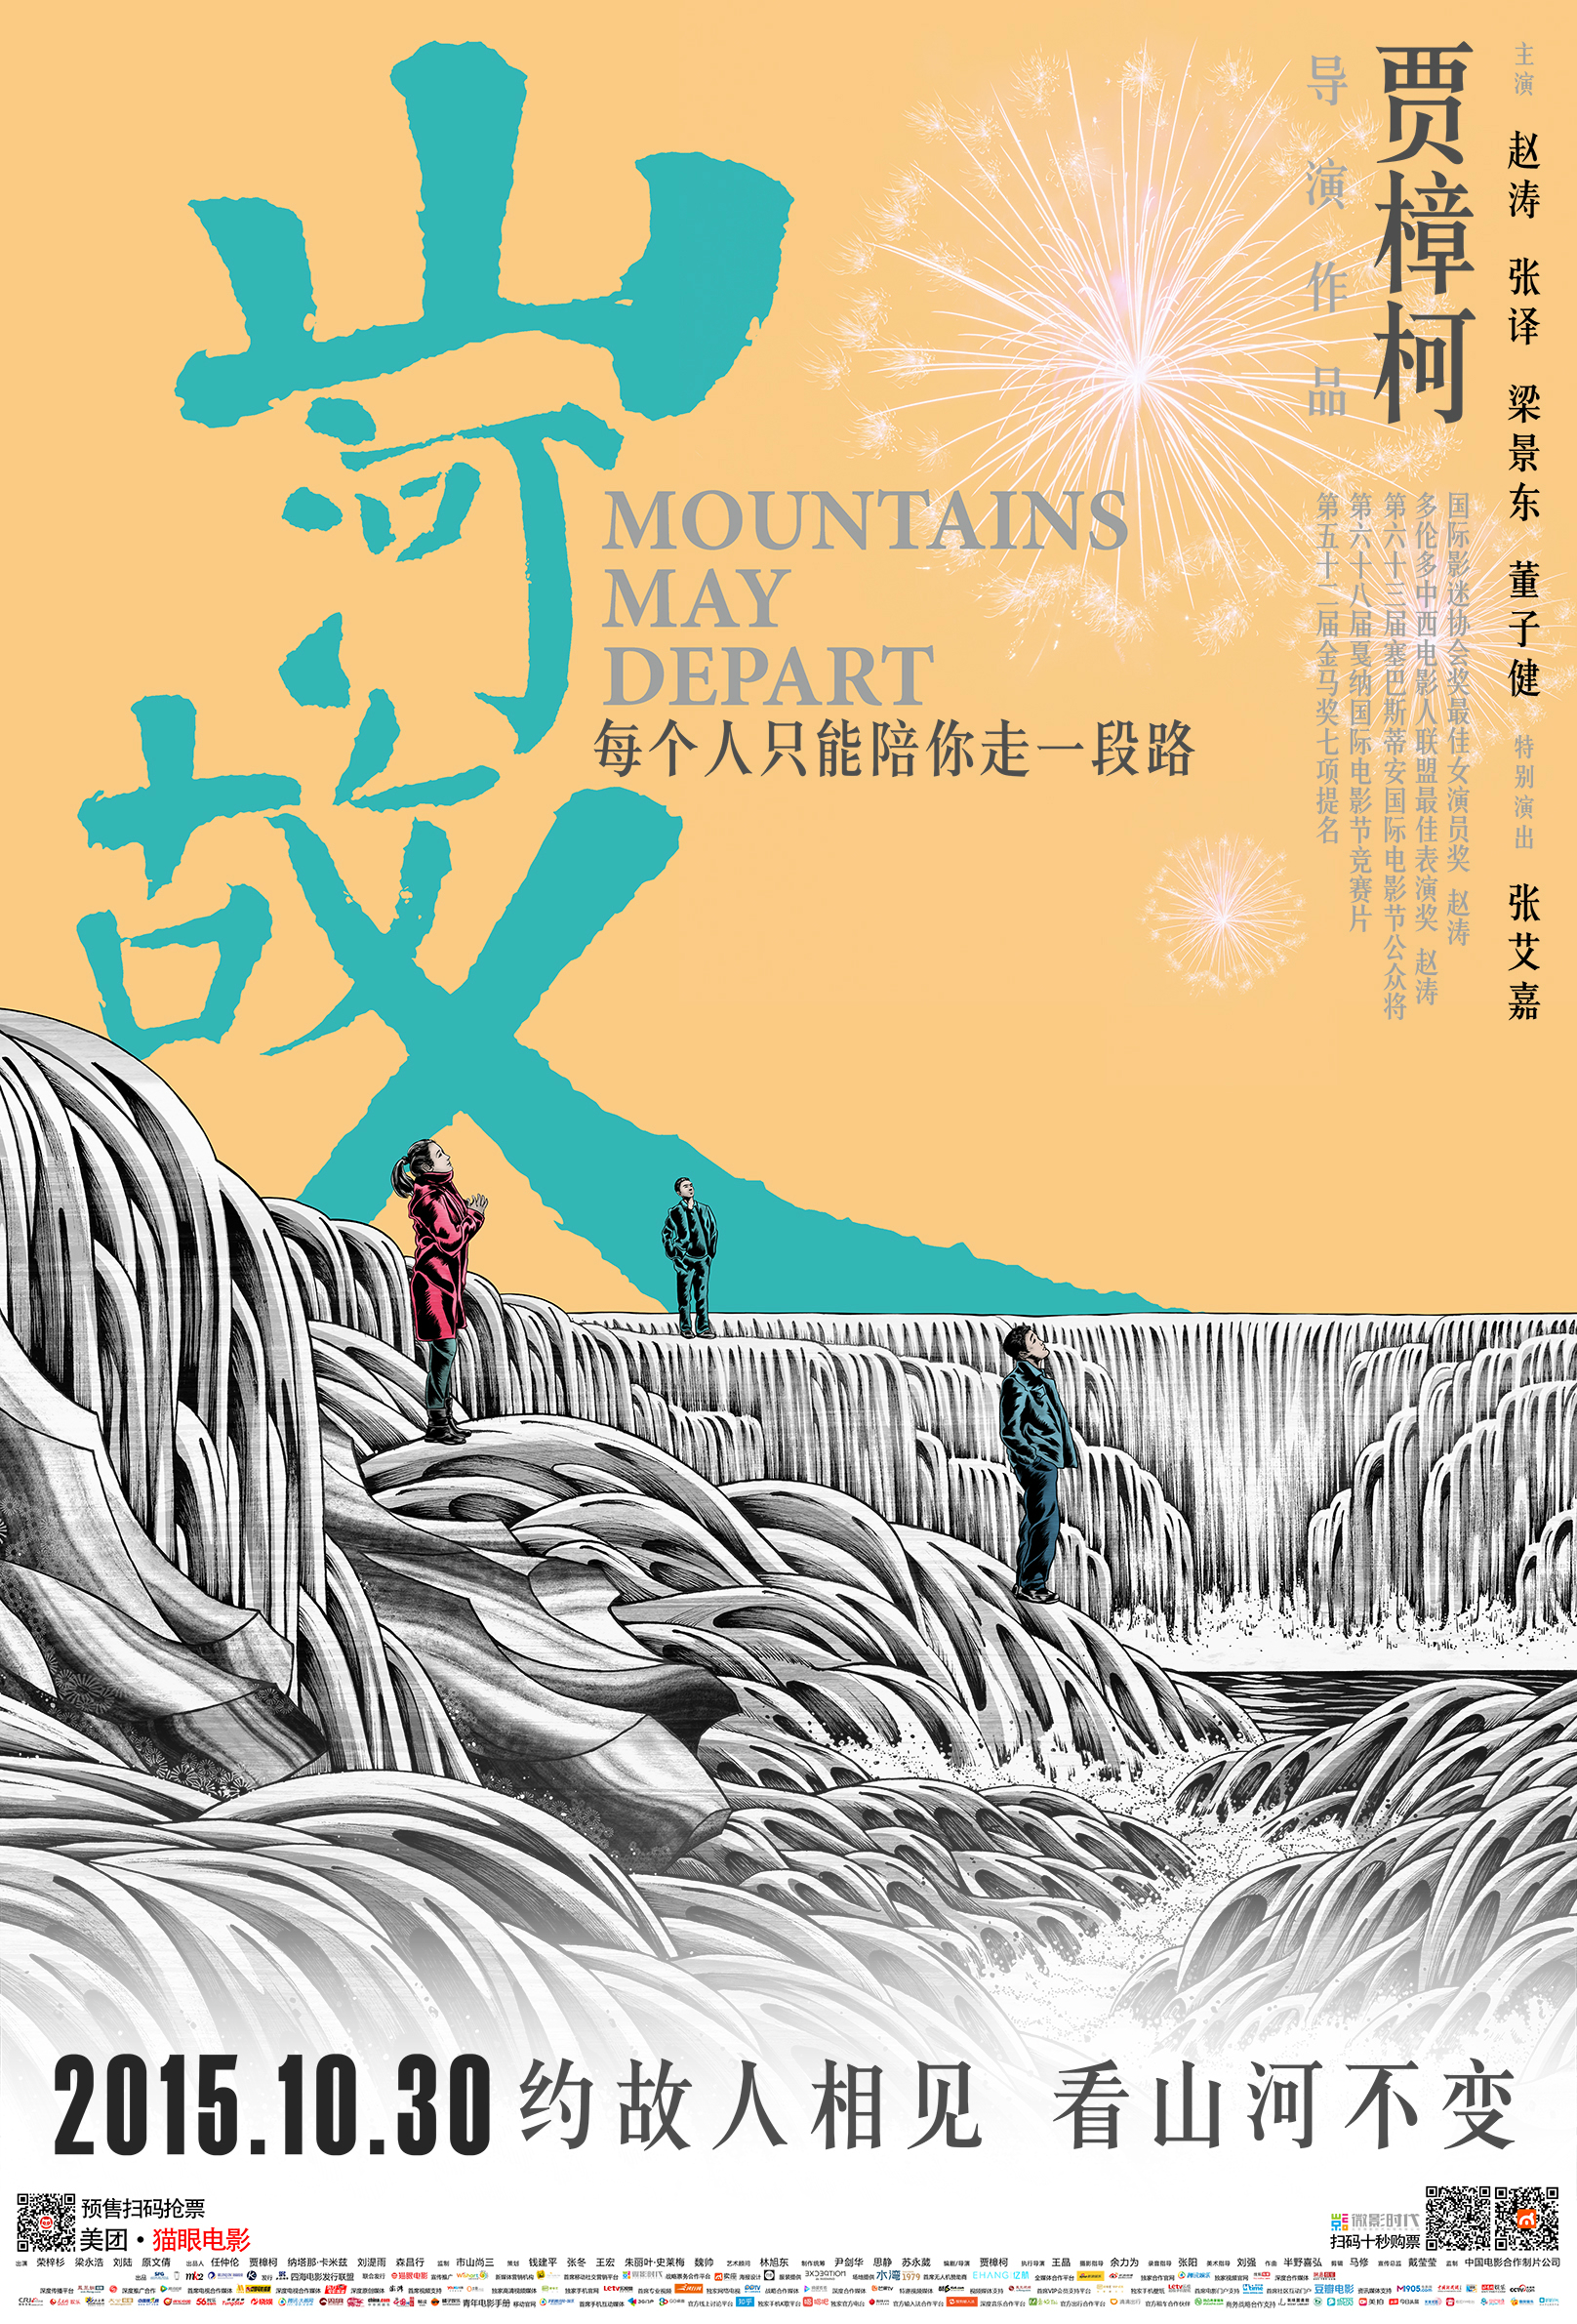 山河故人 - Mountains May Depart